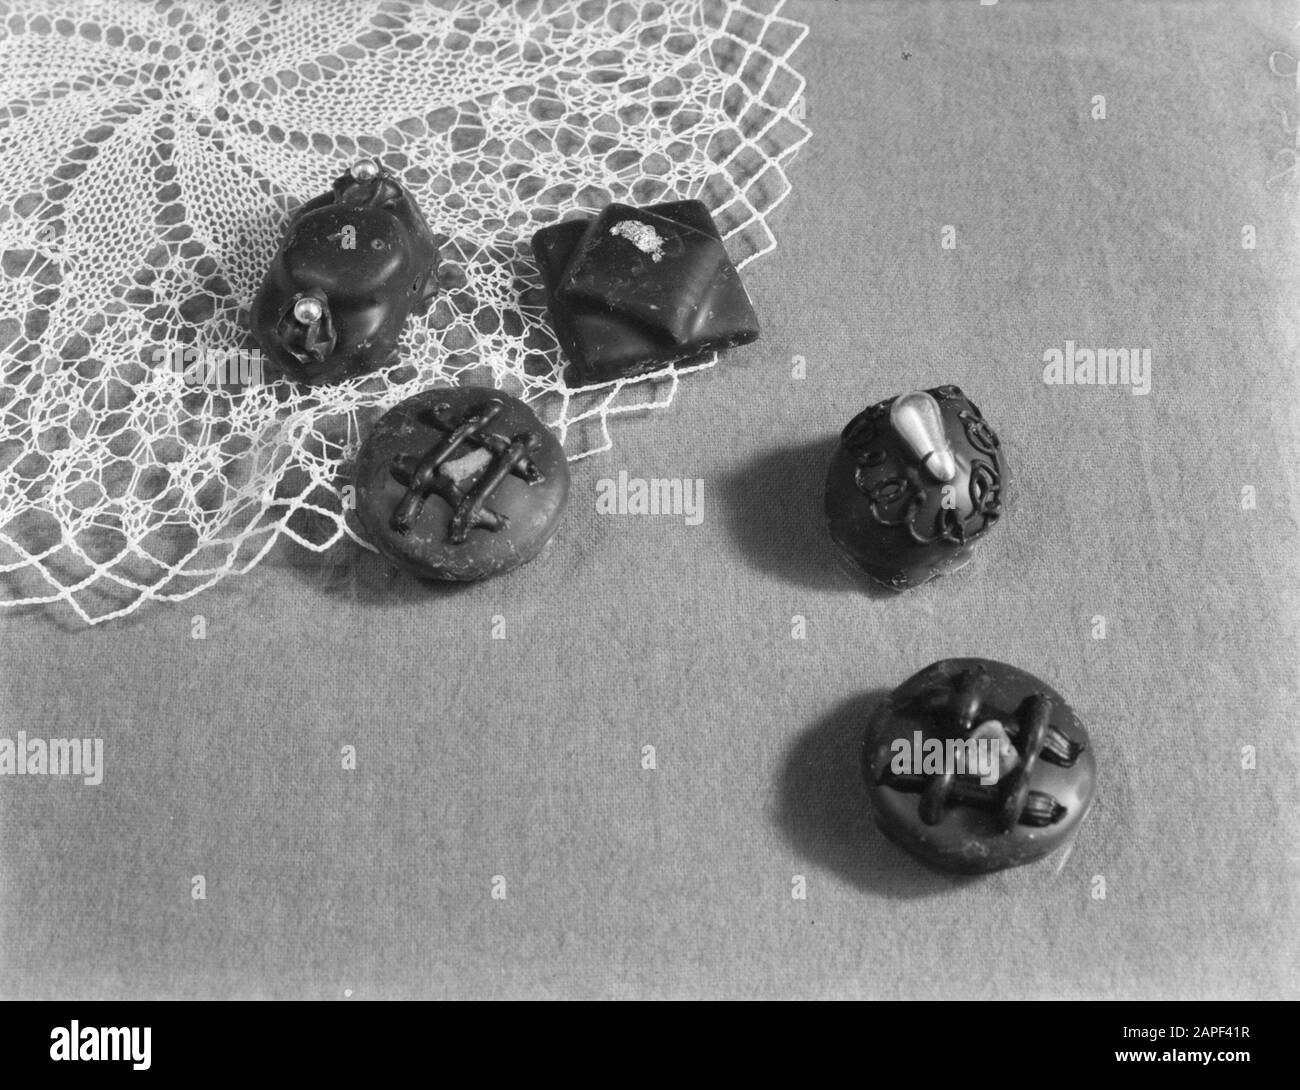 Publicité Photographie Description: Bonbons van Droste Date: 1 janvier 1932 mots clés: Chocolats, chocolat, publicité Banque D'Images